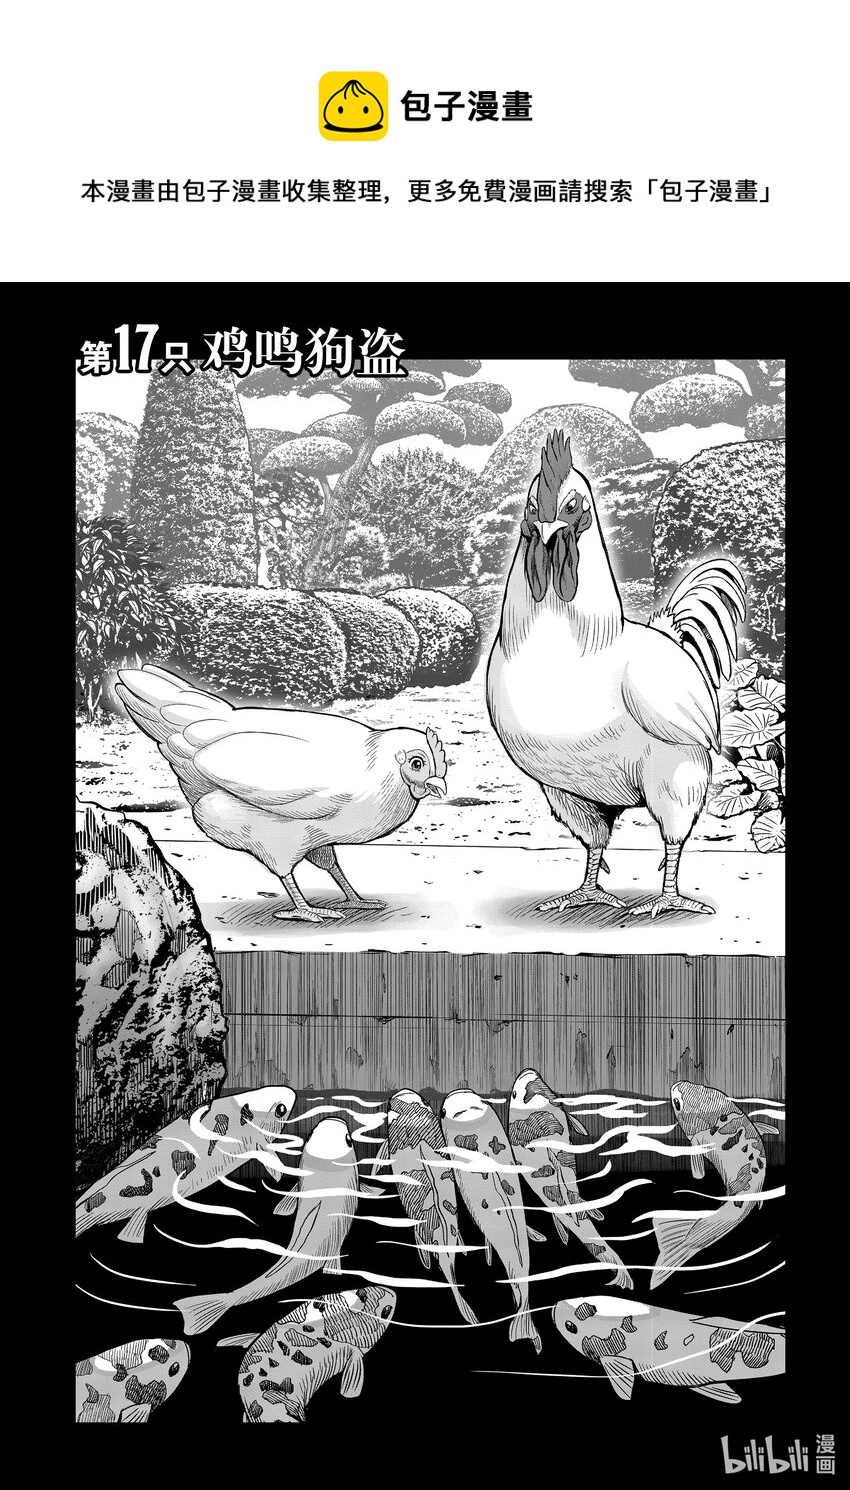 鸡斗士 - 第17只 鸡鸣狗盗 - 1